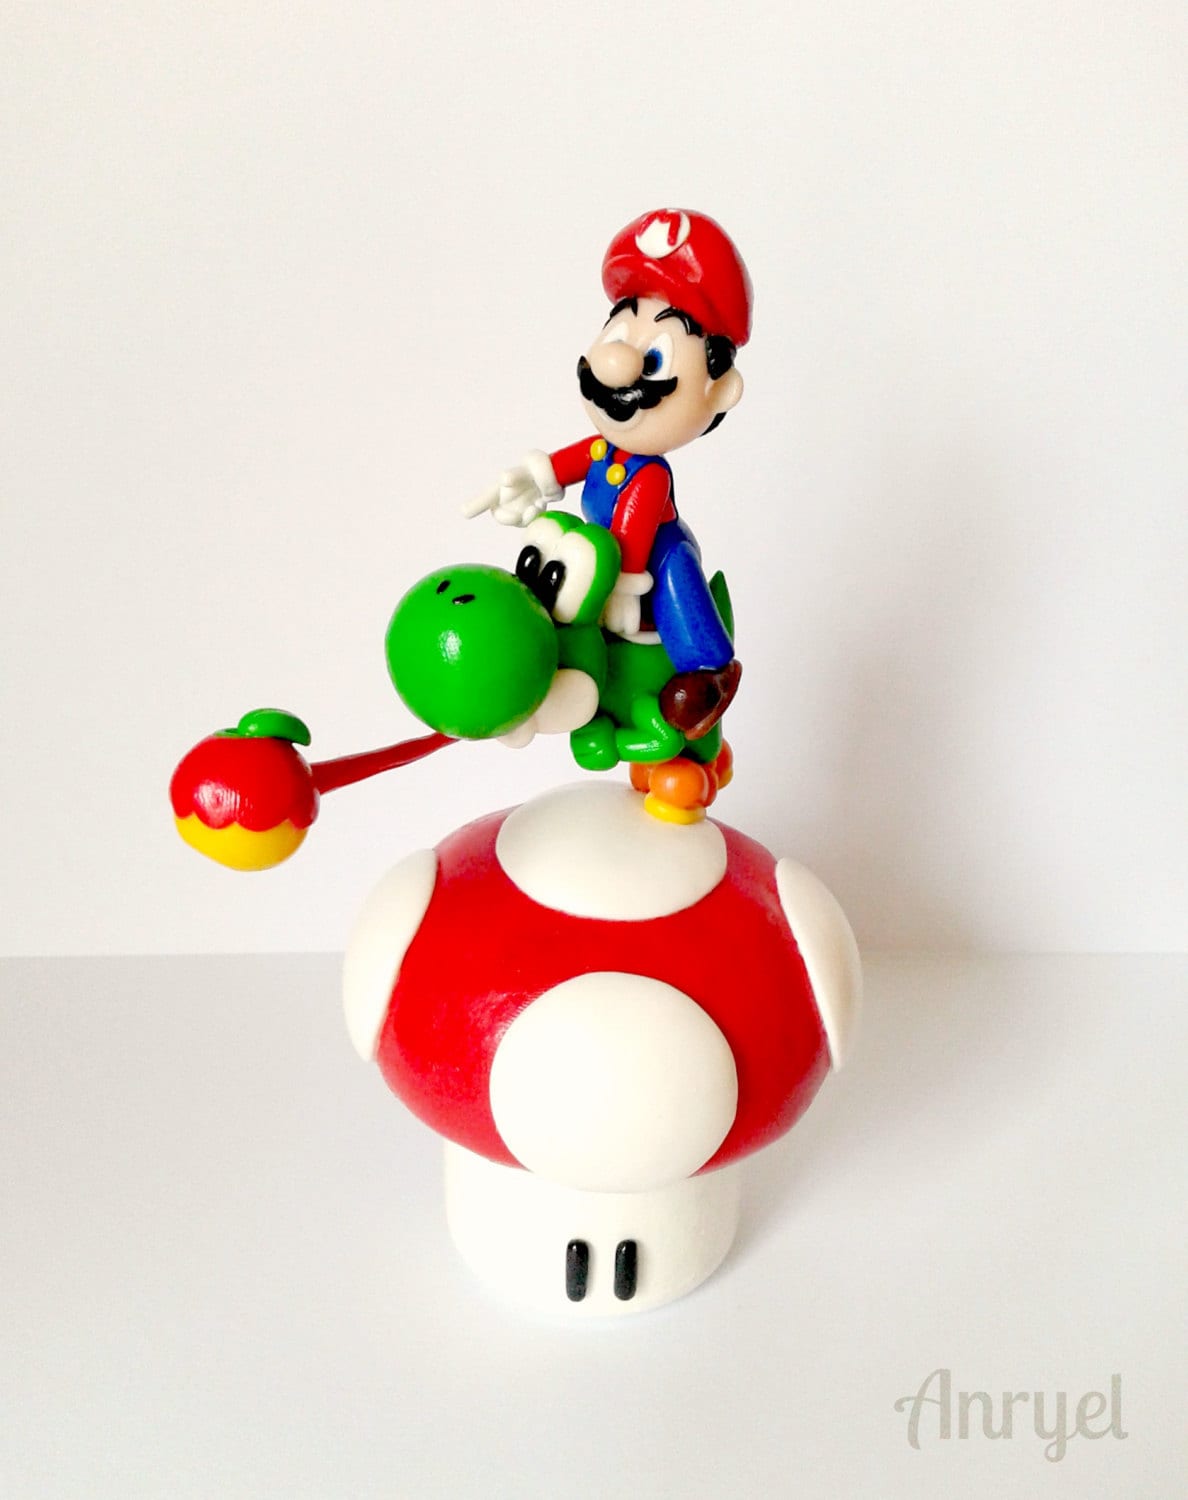 Nintendo’s Super Mario Kart Keychain Yoshi❤️